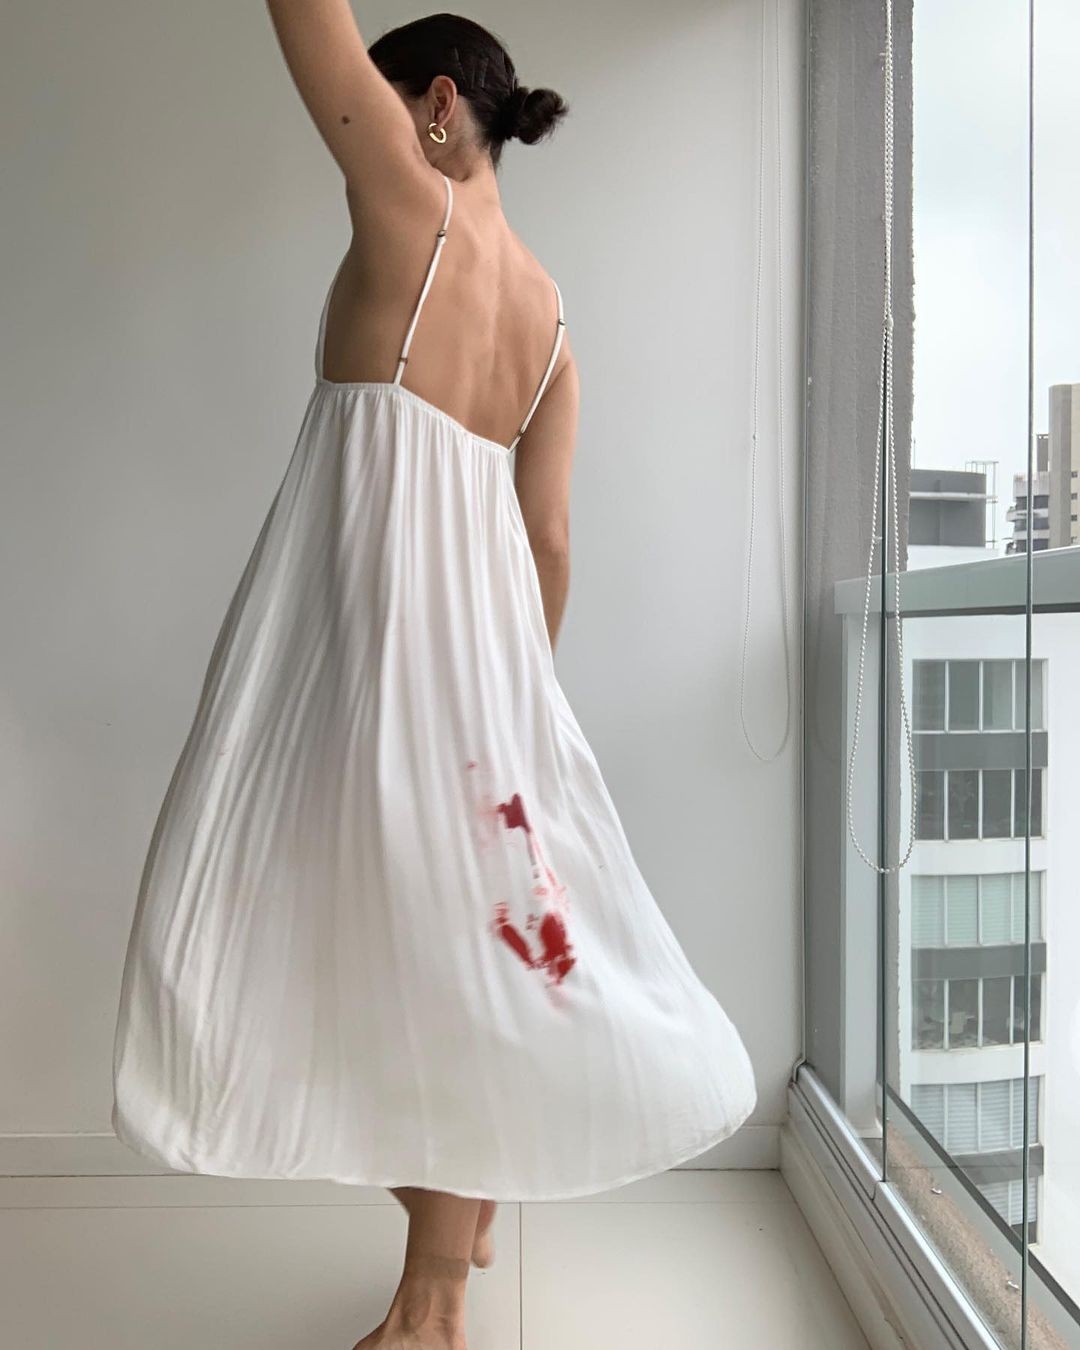 Julia Konrad mostra roupa suja de menstruação (Foto: Reprodução / Instagram)